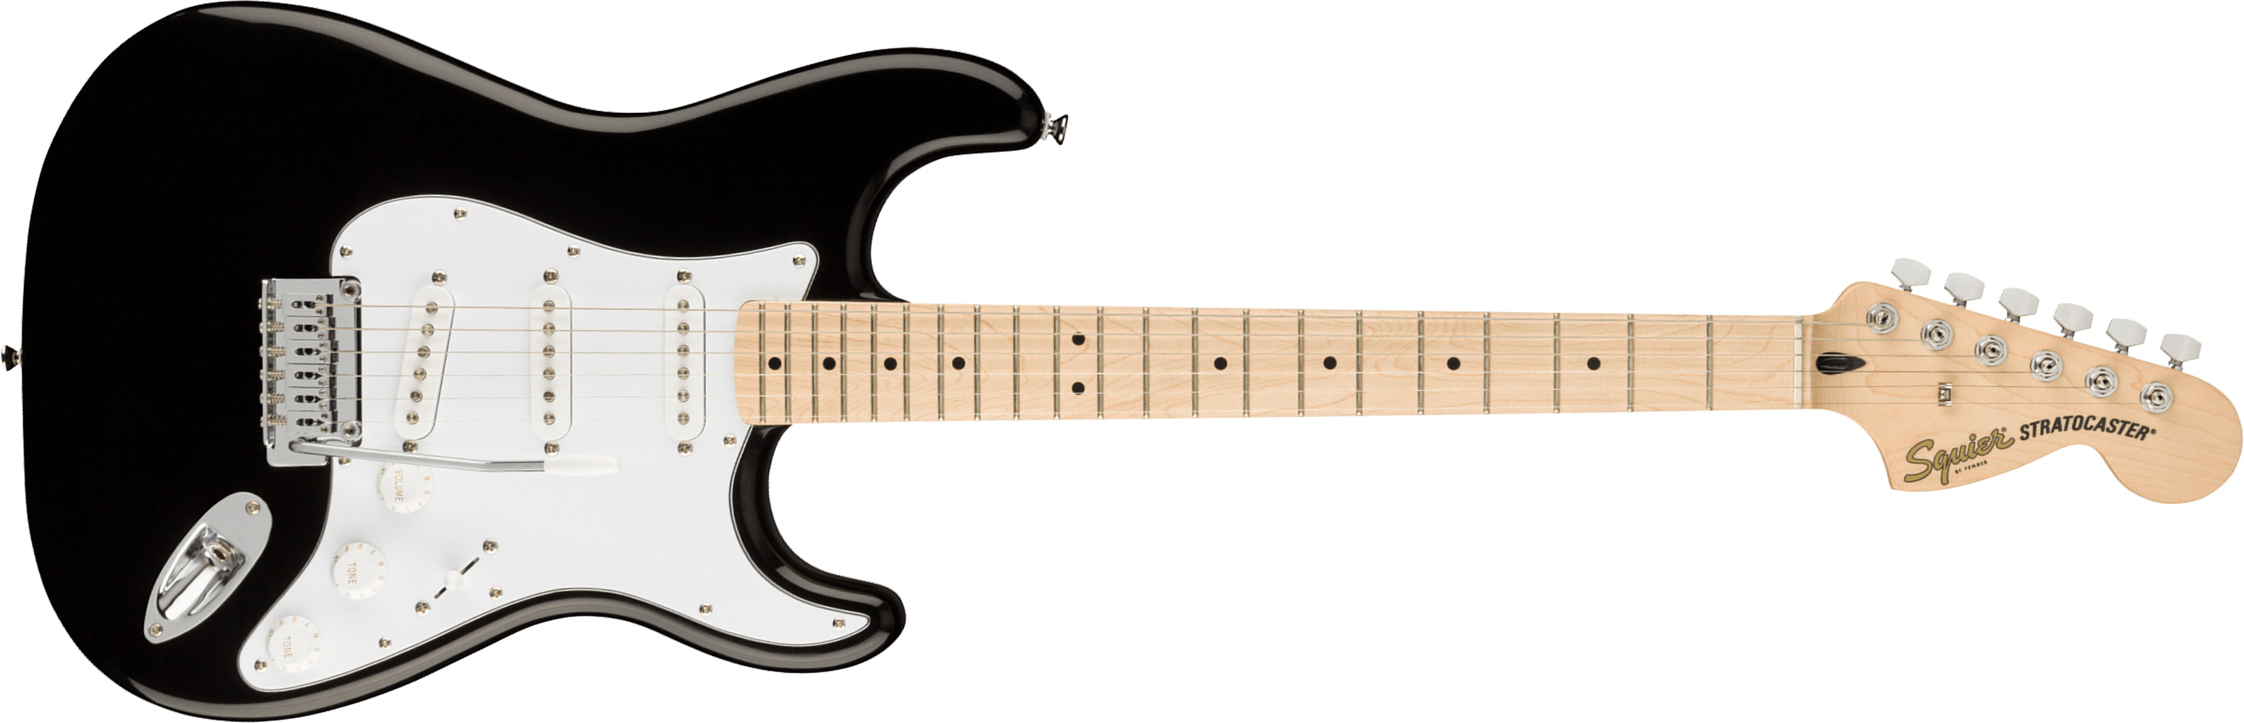 Squier Strat Affinity 2021 Sss Trem Mn - Black - Elektrische gitaar in Str-vorm - Main picture